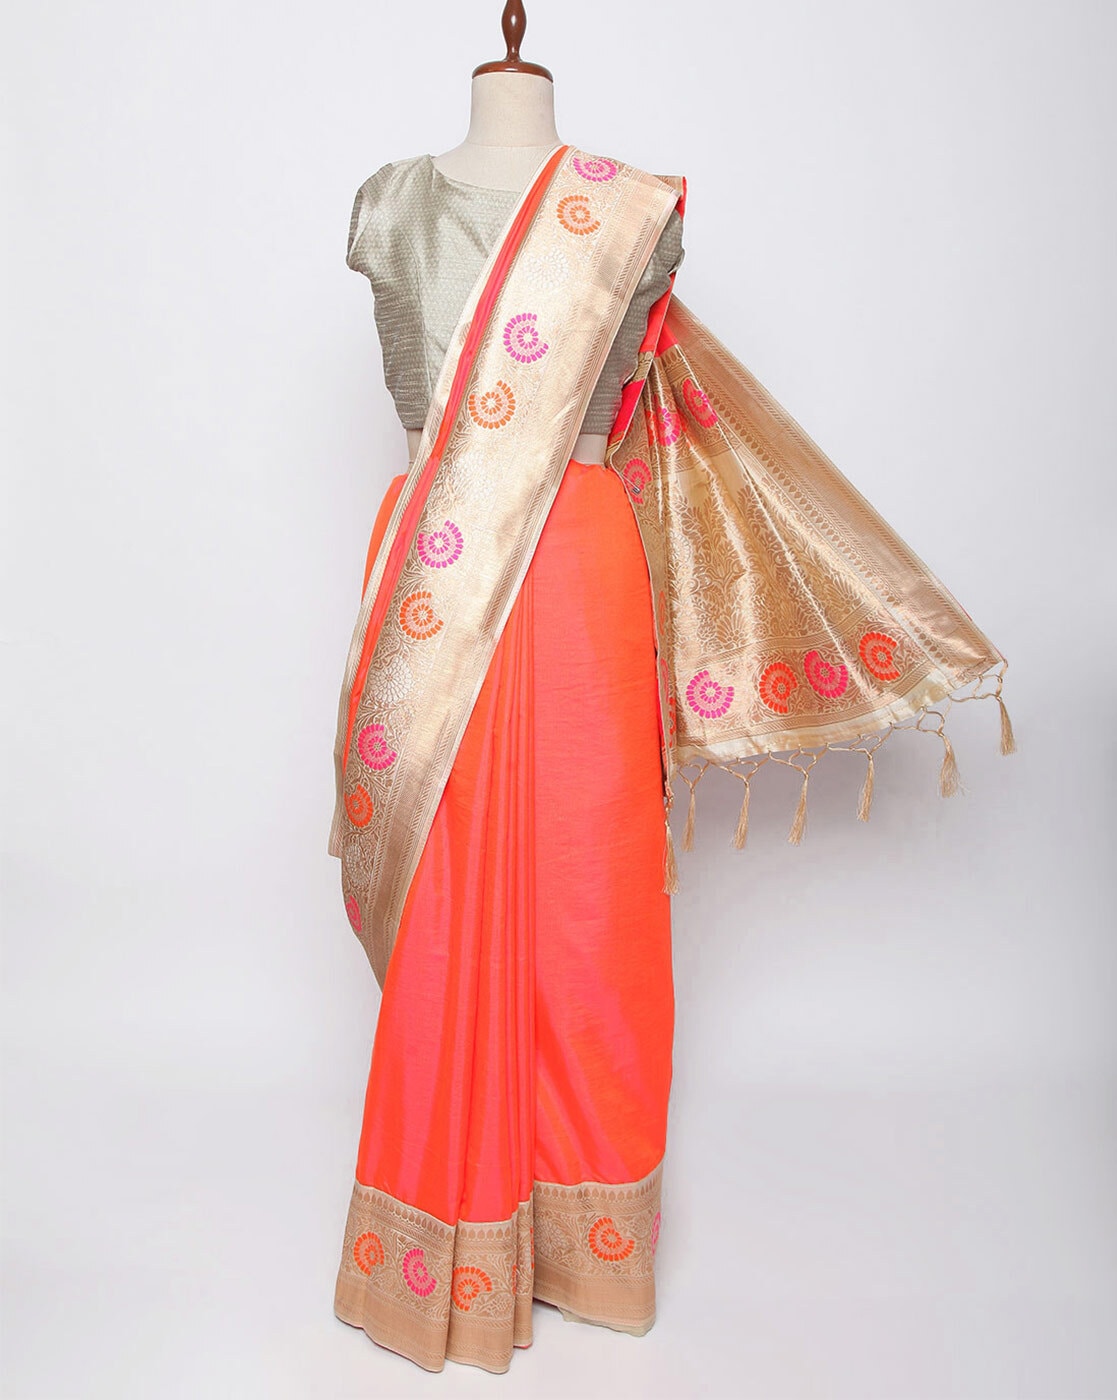 Varkala Silk Sarees Pink Art Silk Saree Price in India - Buy Varkala Silk  Sarees Pink Art Silk Saree Online at Snapdeal